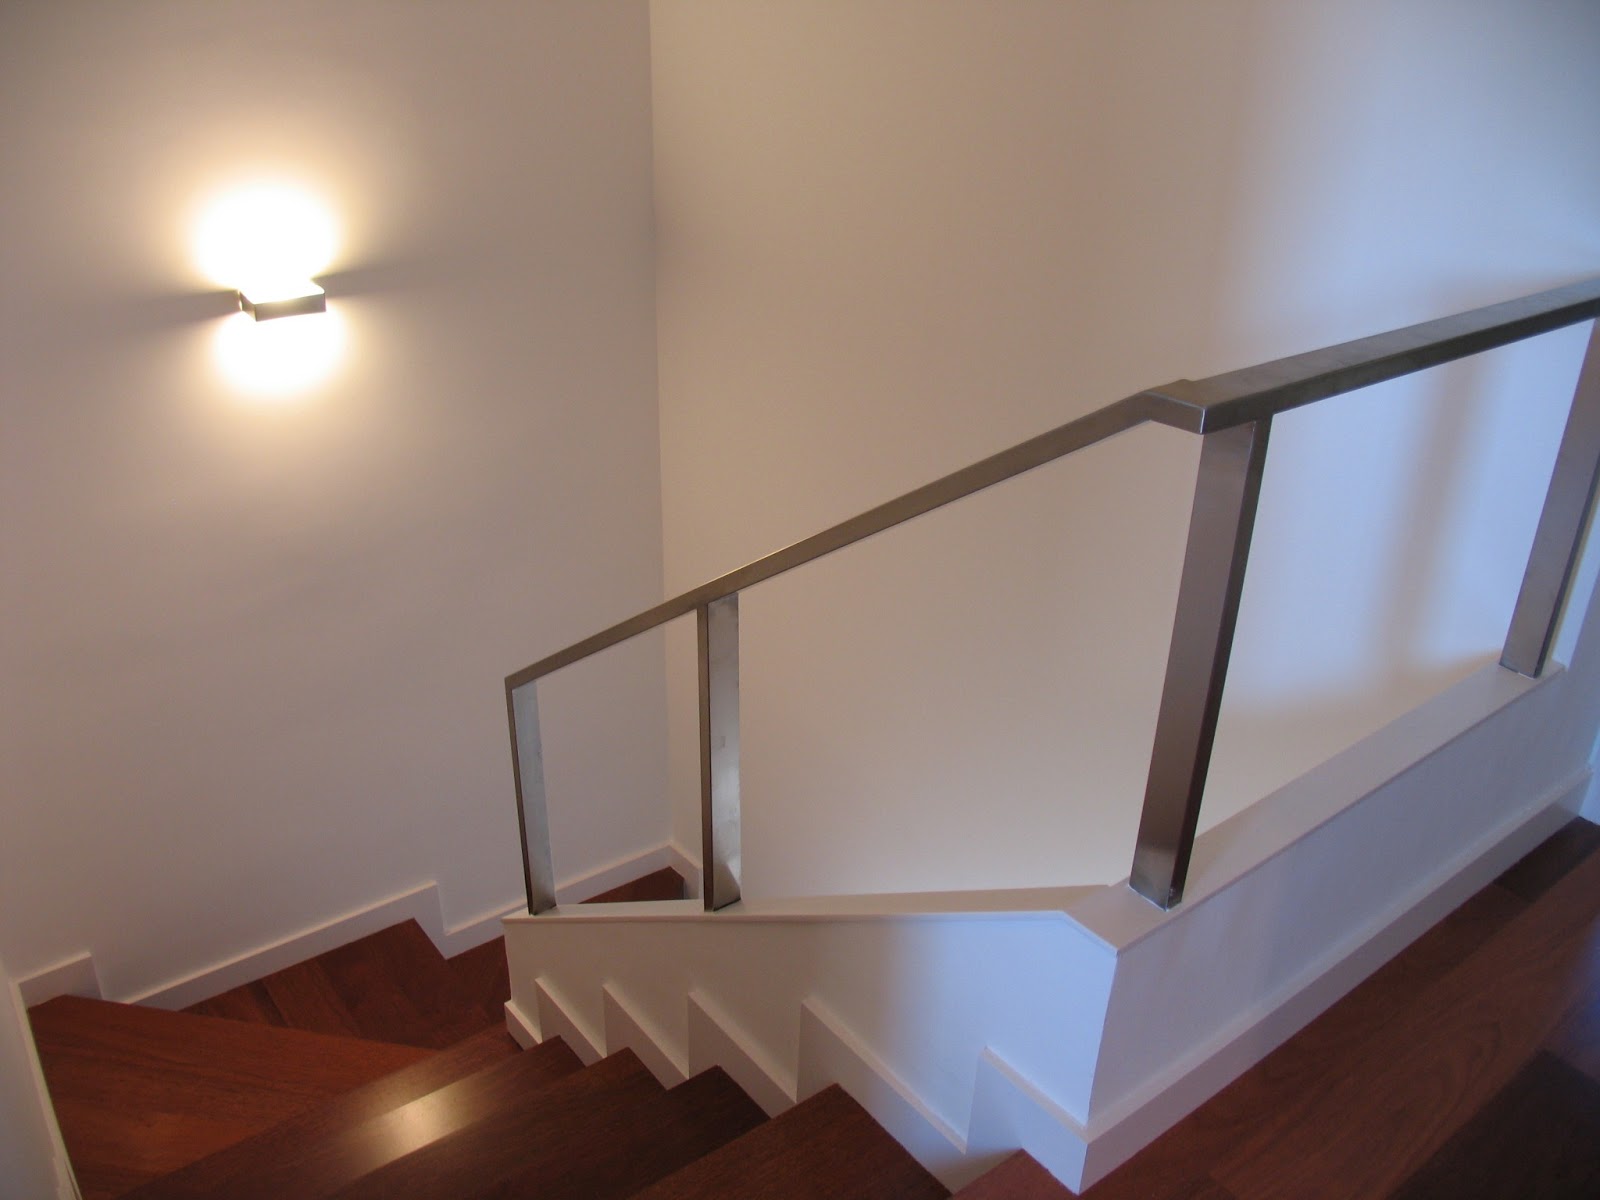 Escaleras Iluminadas Con Estos Tres Tips